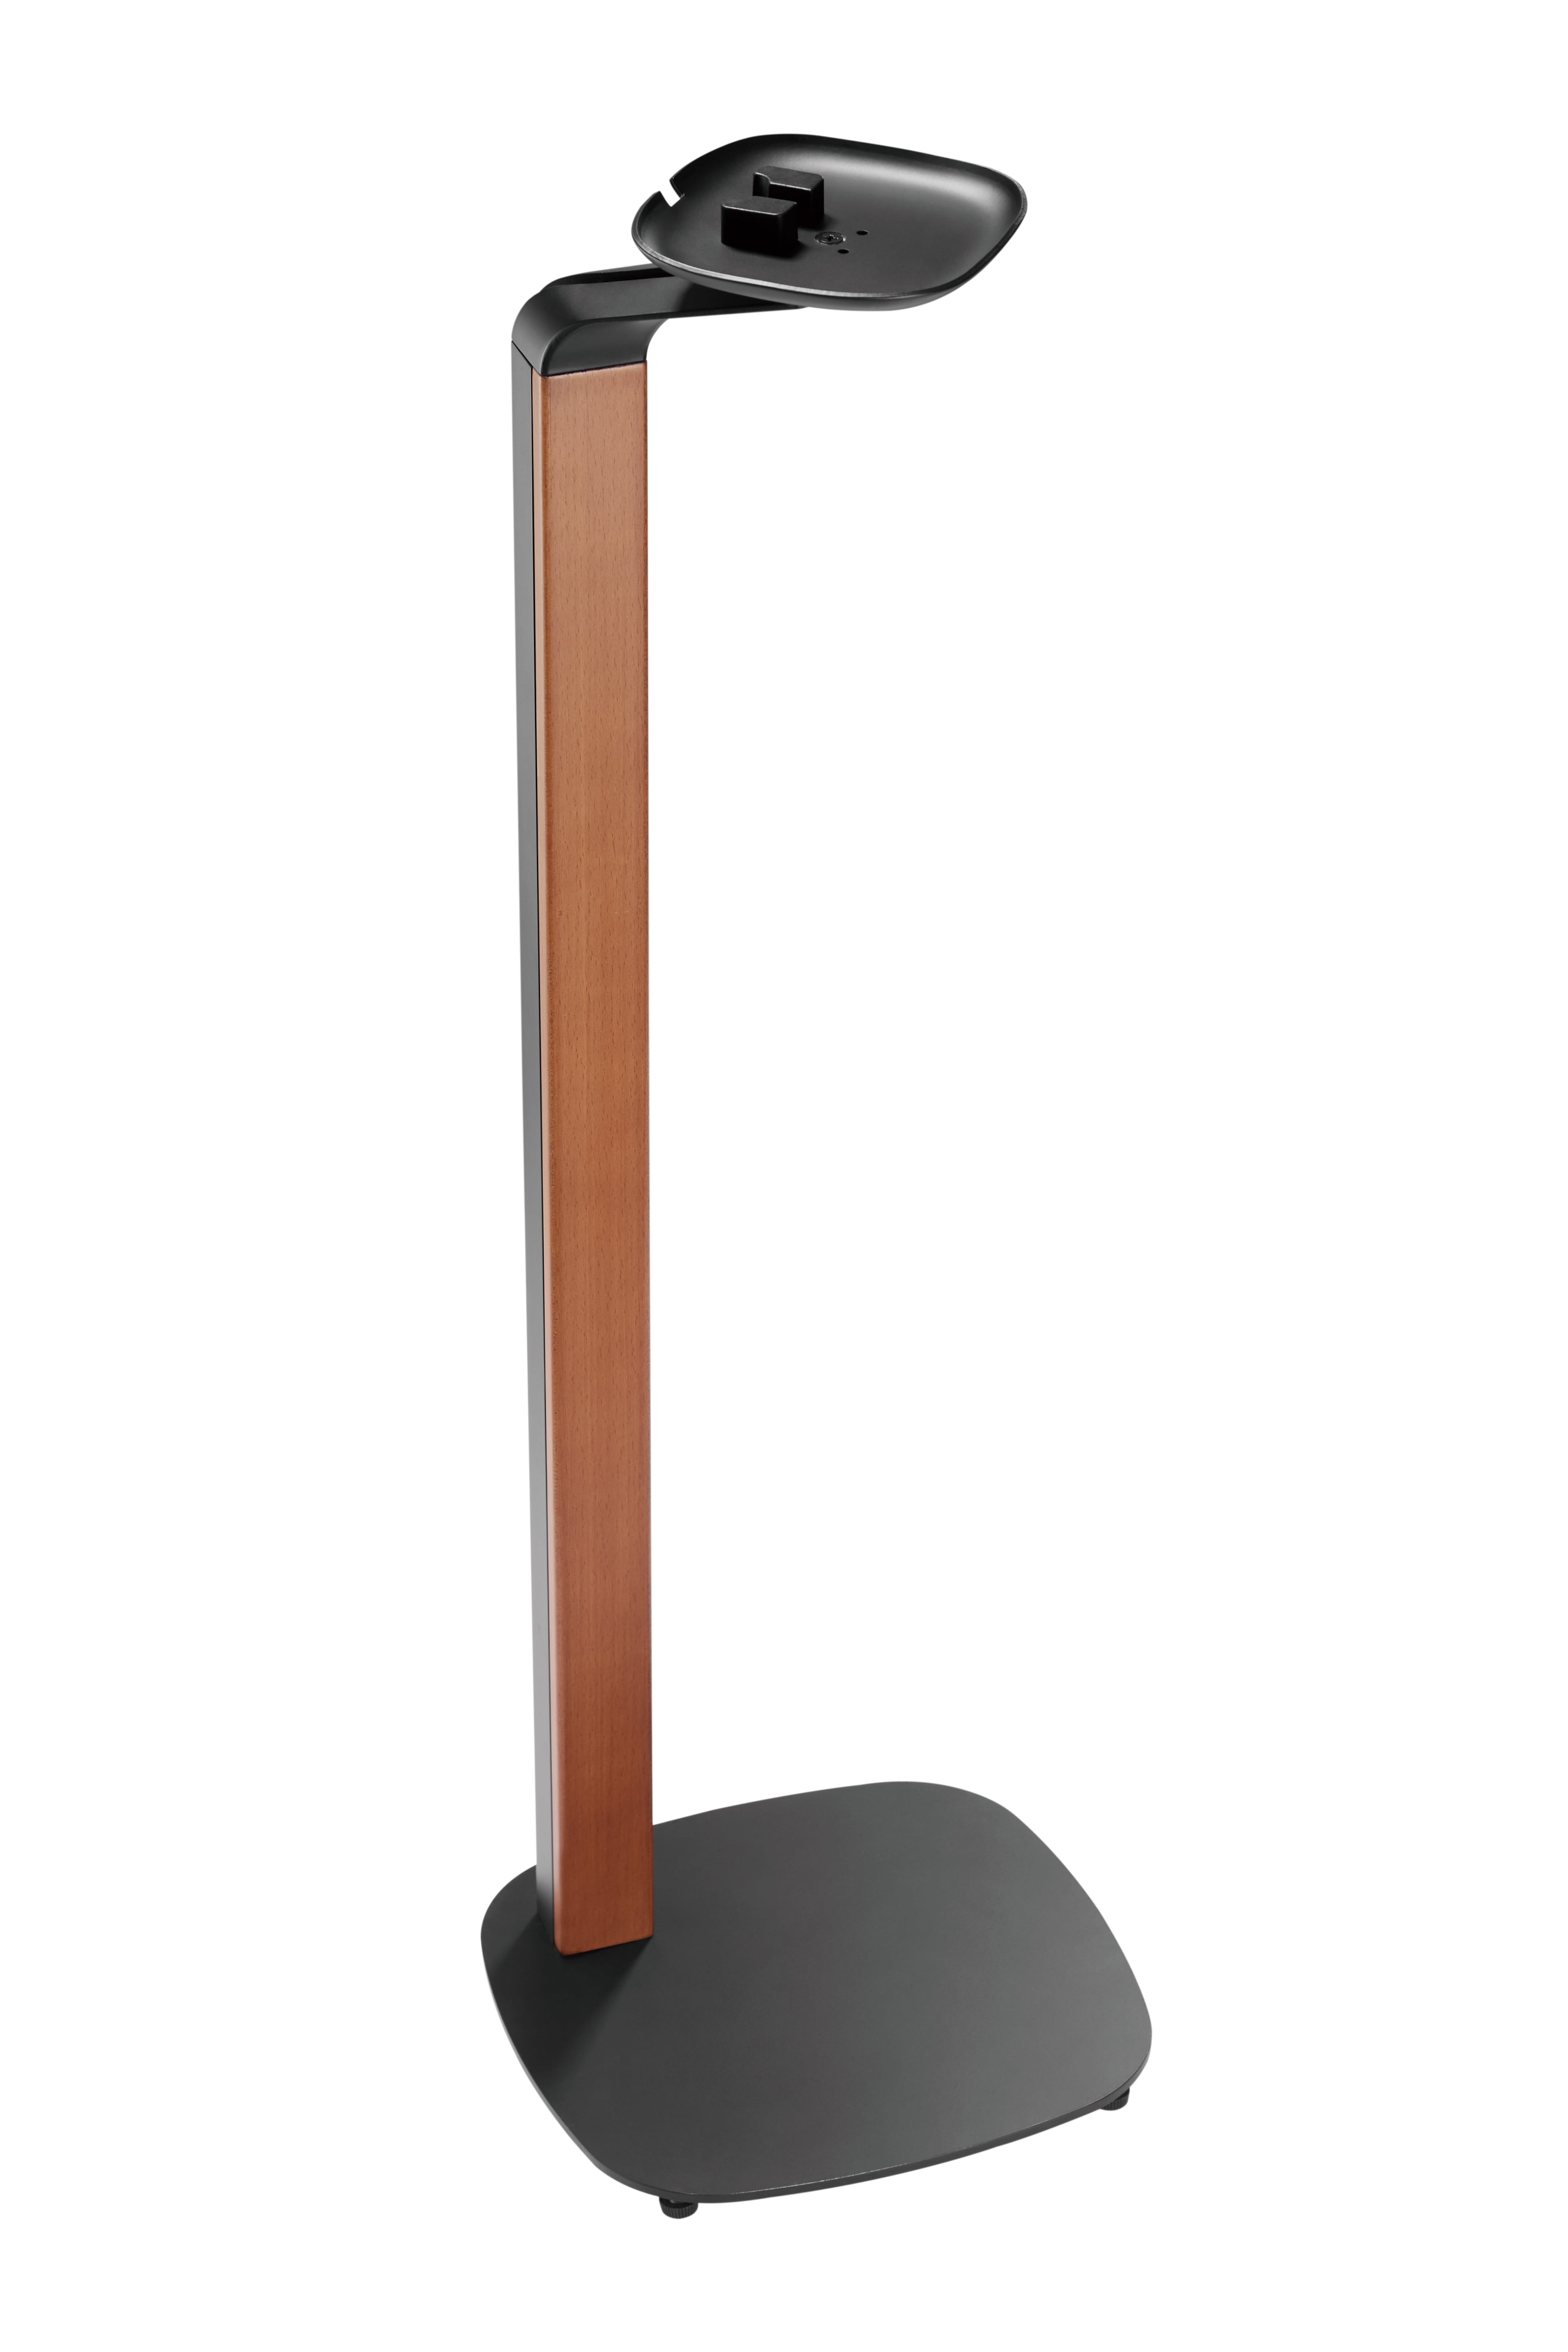 modtage Fugtig Medfølelse ynVISION Premium Floor Stand for Sonos One, One SL, Play:1 Speaker | Black  - Walmart.com